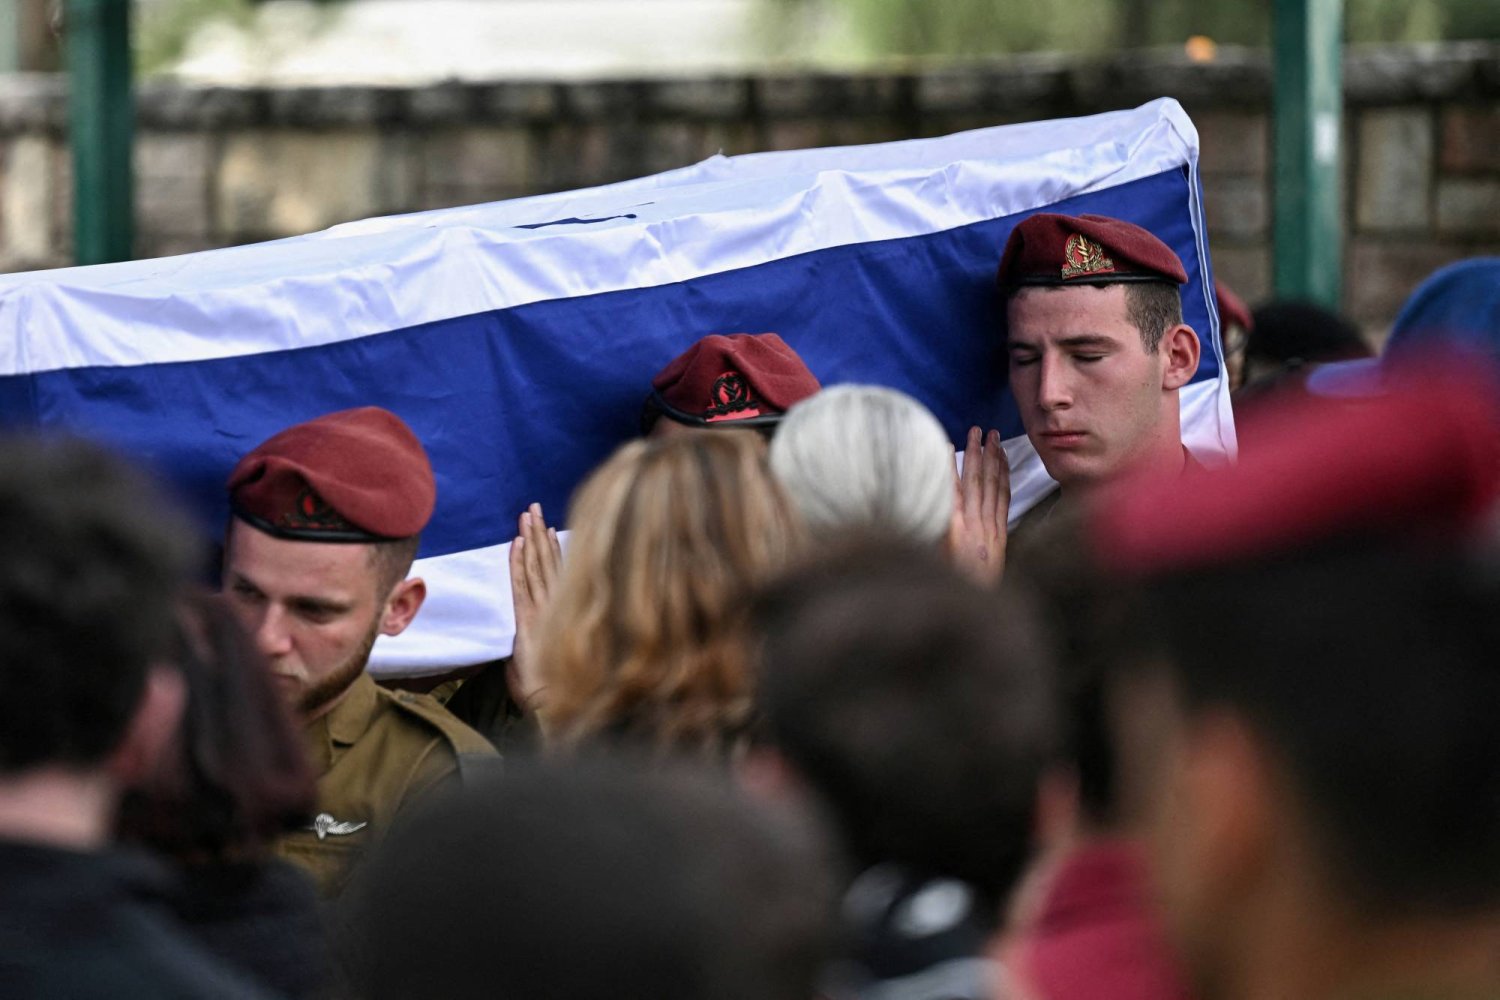 جنود إسرائيليون يحملون نعش زميلهم بجنازته في ريشون لتسيون بإسرائيل (رويترز)